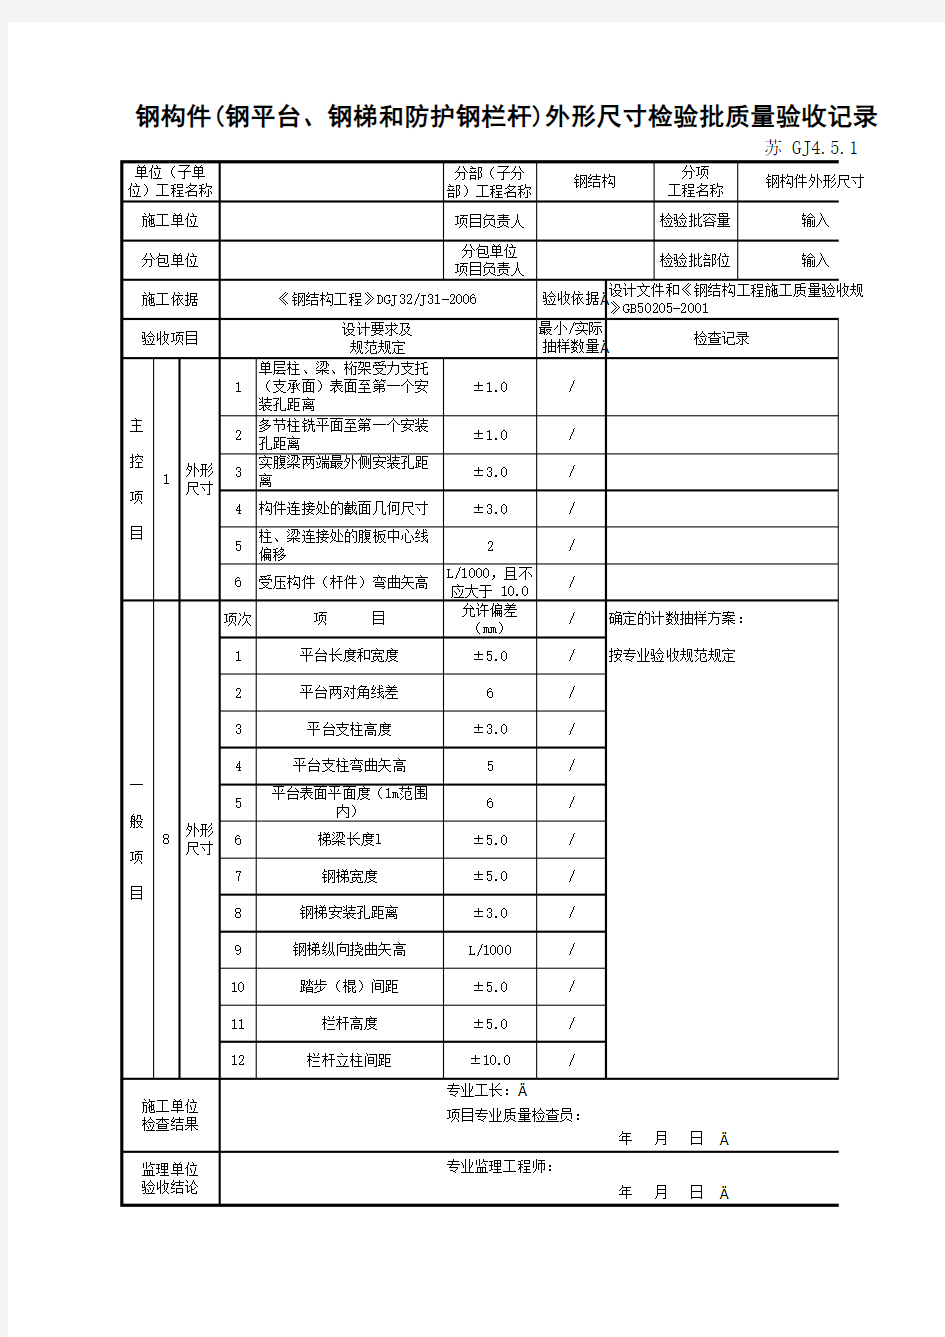 江苏省建设工程质监0190910六版表格文件GJ4.5.10